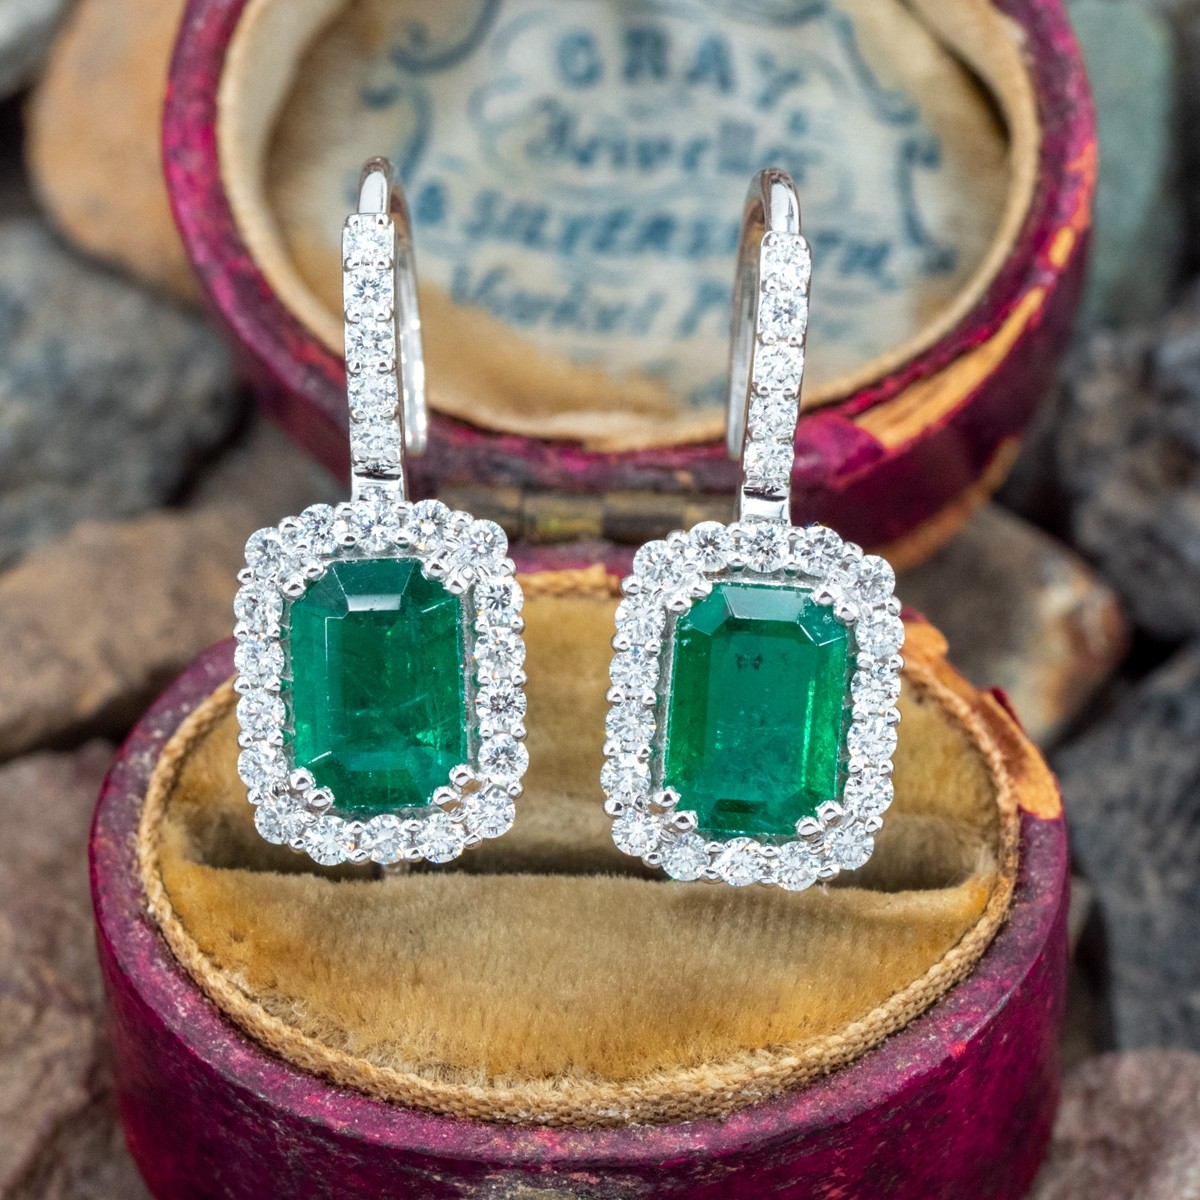 Diamond 14k Real White Gold Stud Earrings Women Jewelry | eBay